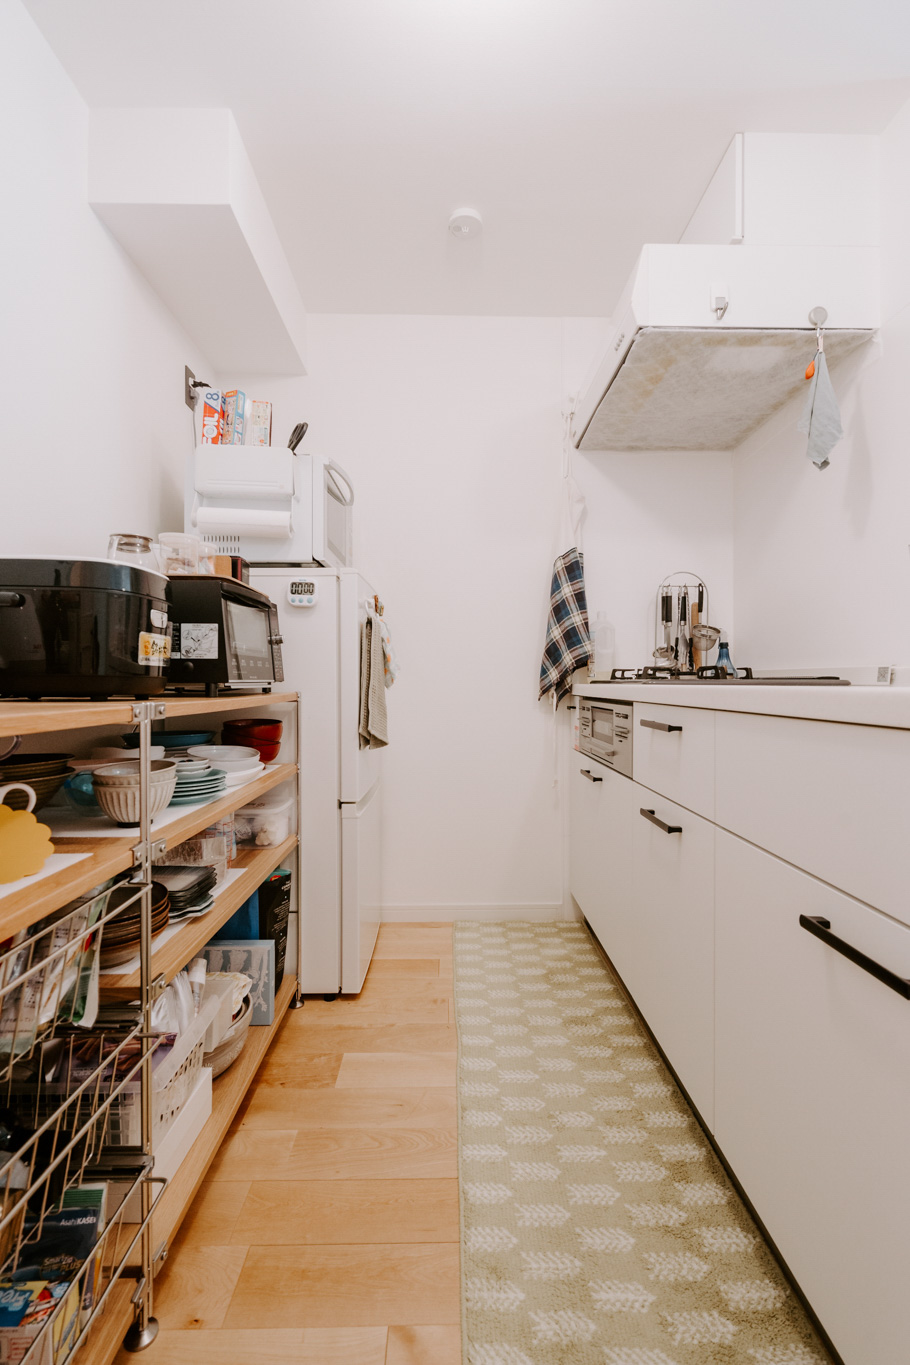 goodroomのオリジナルリノベーション「TOMOS」で暮らす方のお部屋。システムキッチンの背面は十分なスペースがあったため、無印良品のユニットシェルフを並べて使用しています。腰ほどまでの高さに揃えることで、炊飯器などの家電も使用しやすいようにしていらっしゃいました。